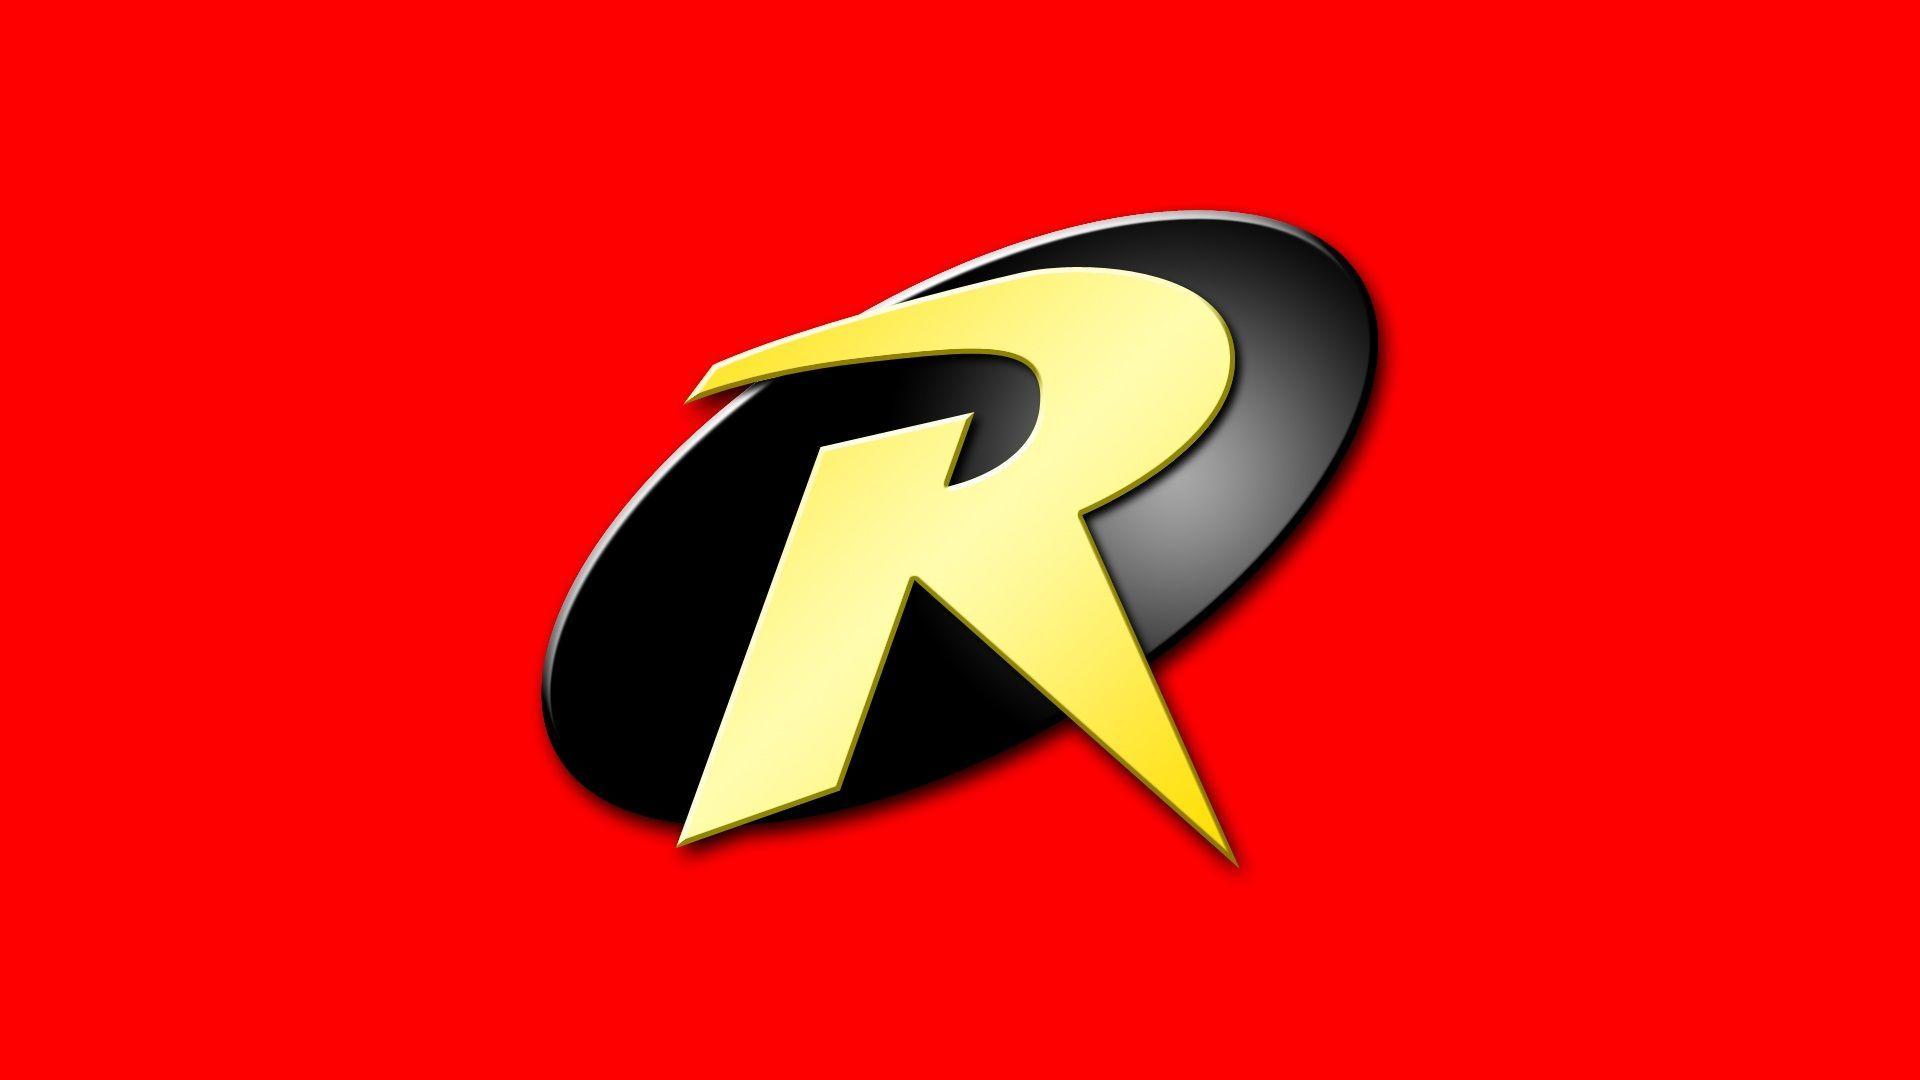 red robin logo wallpaper